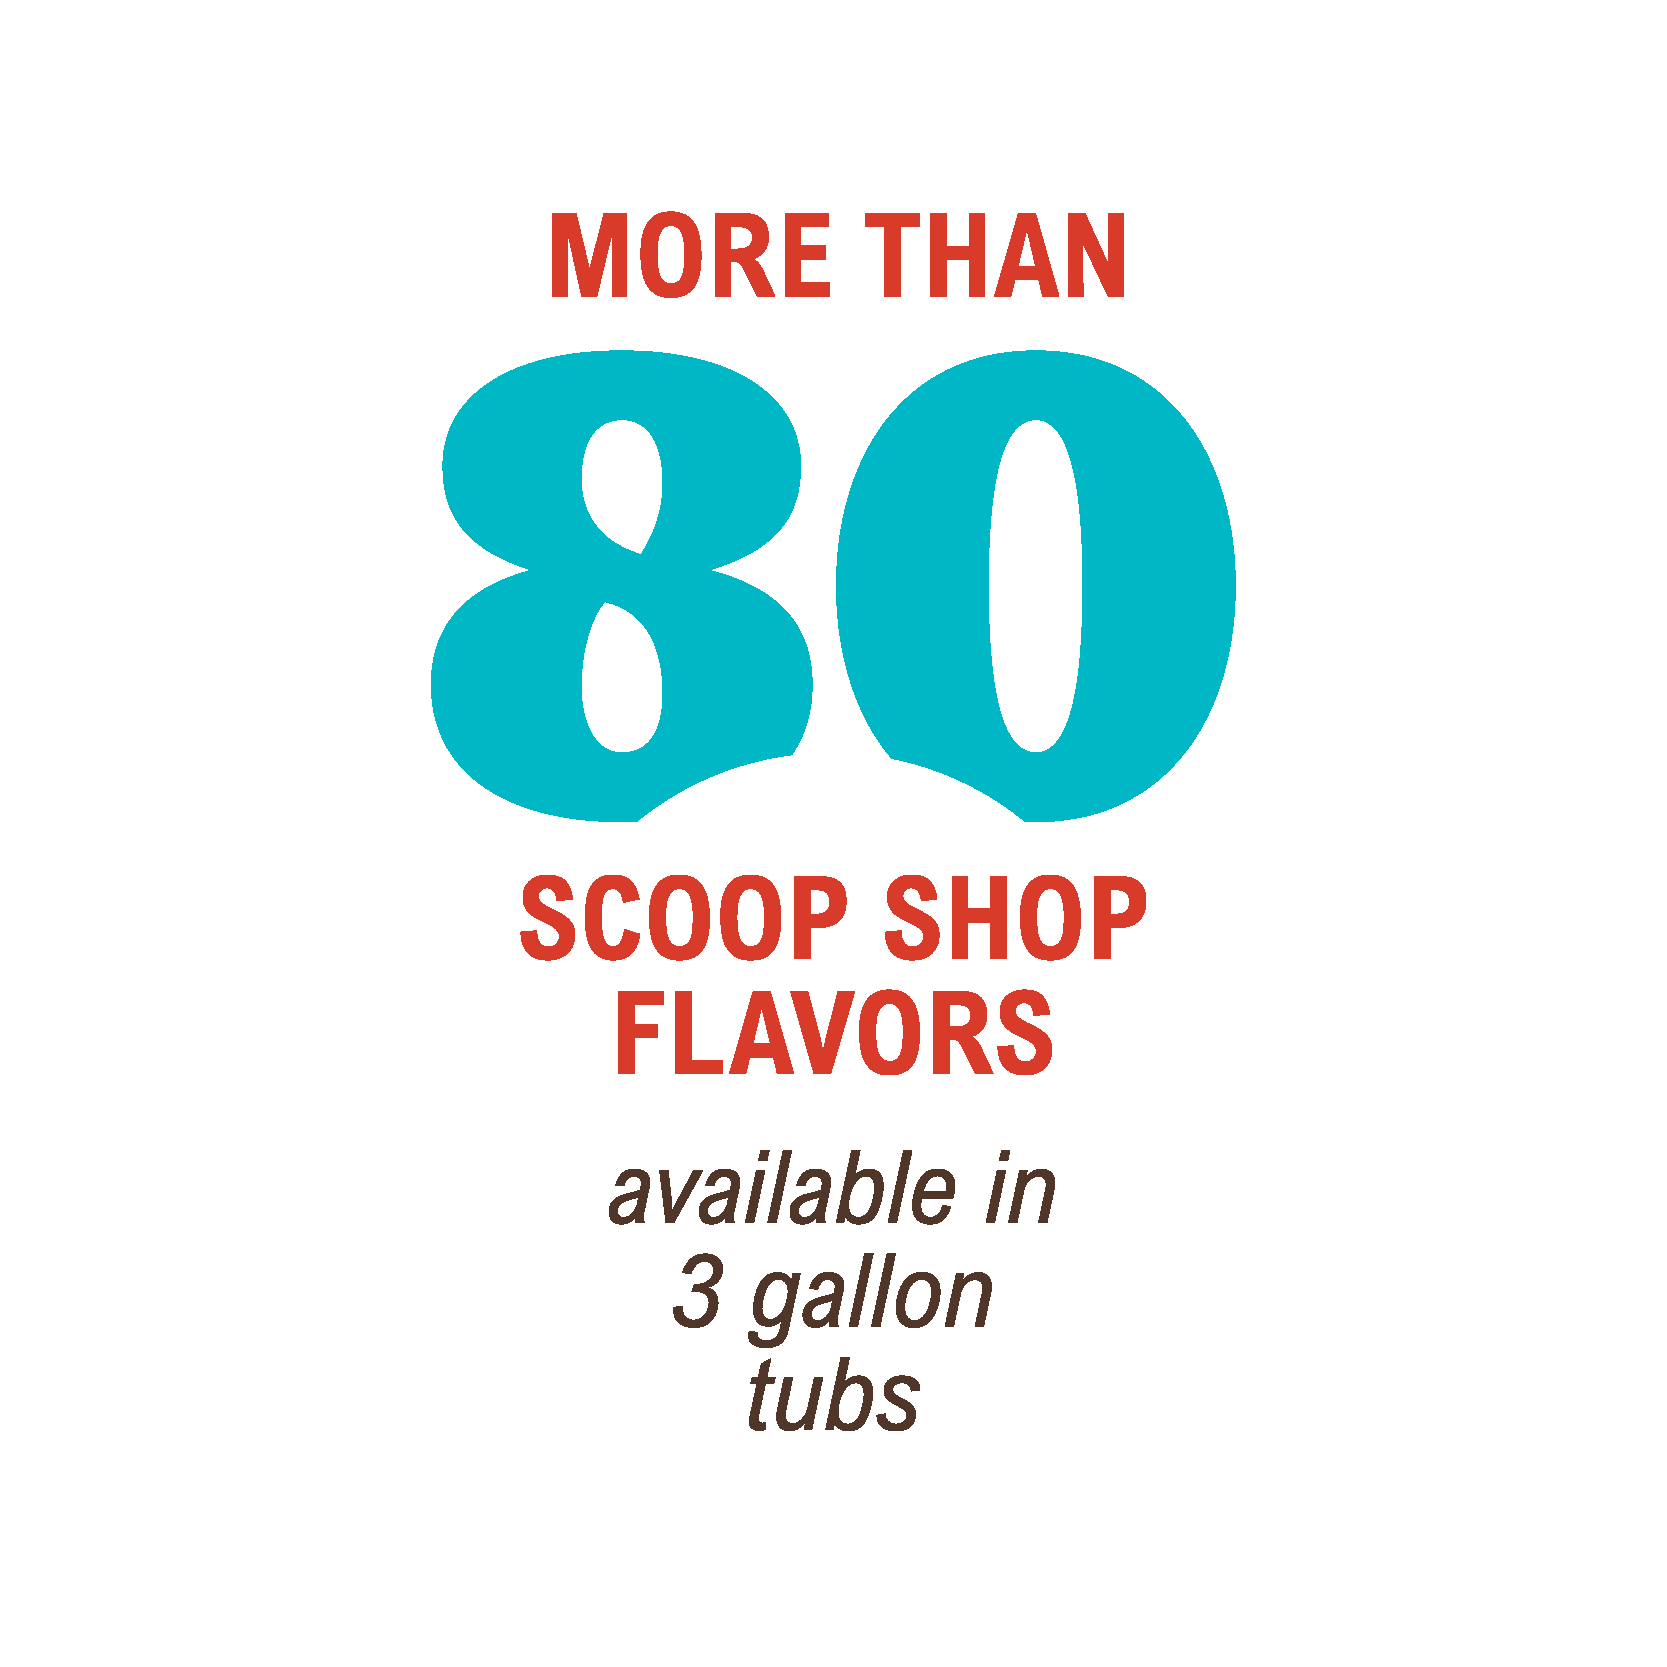 Scoop shop flavors infographic